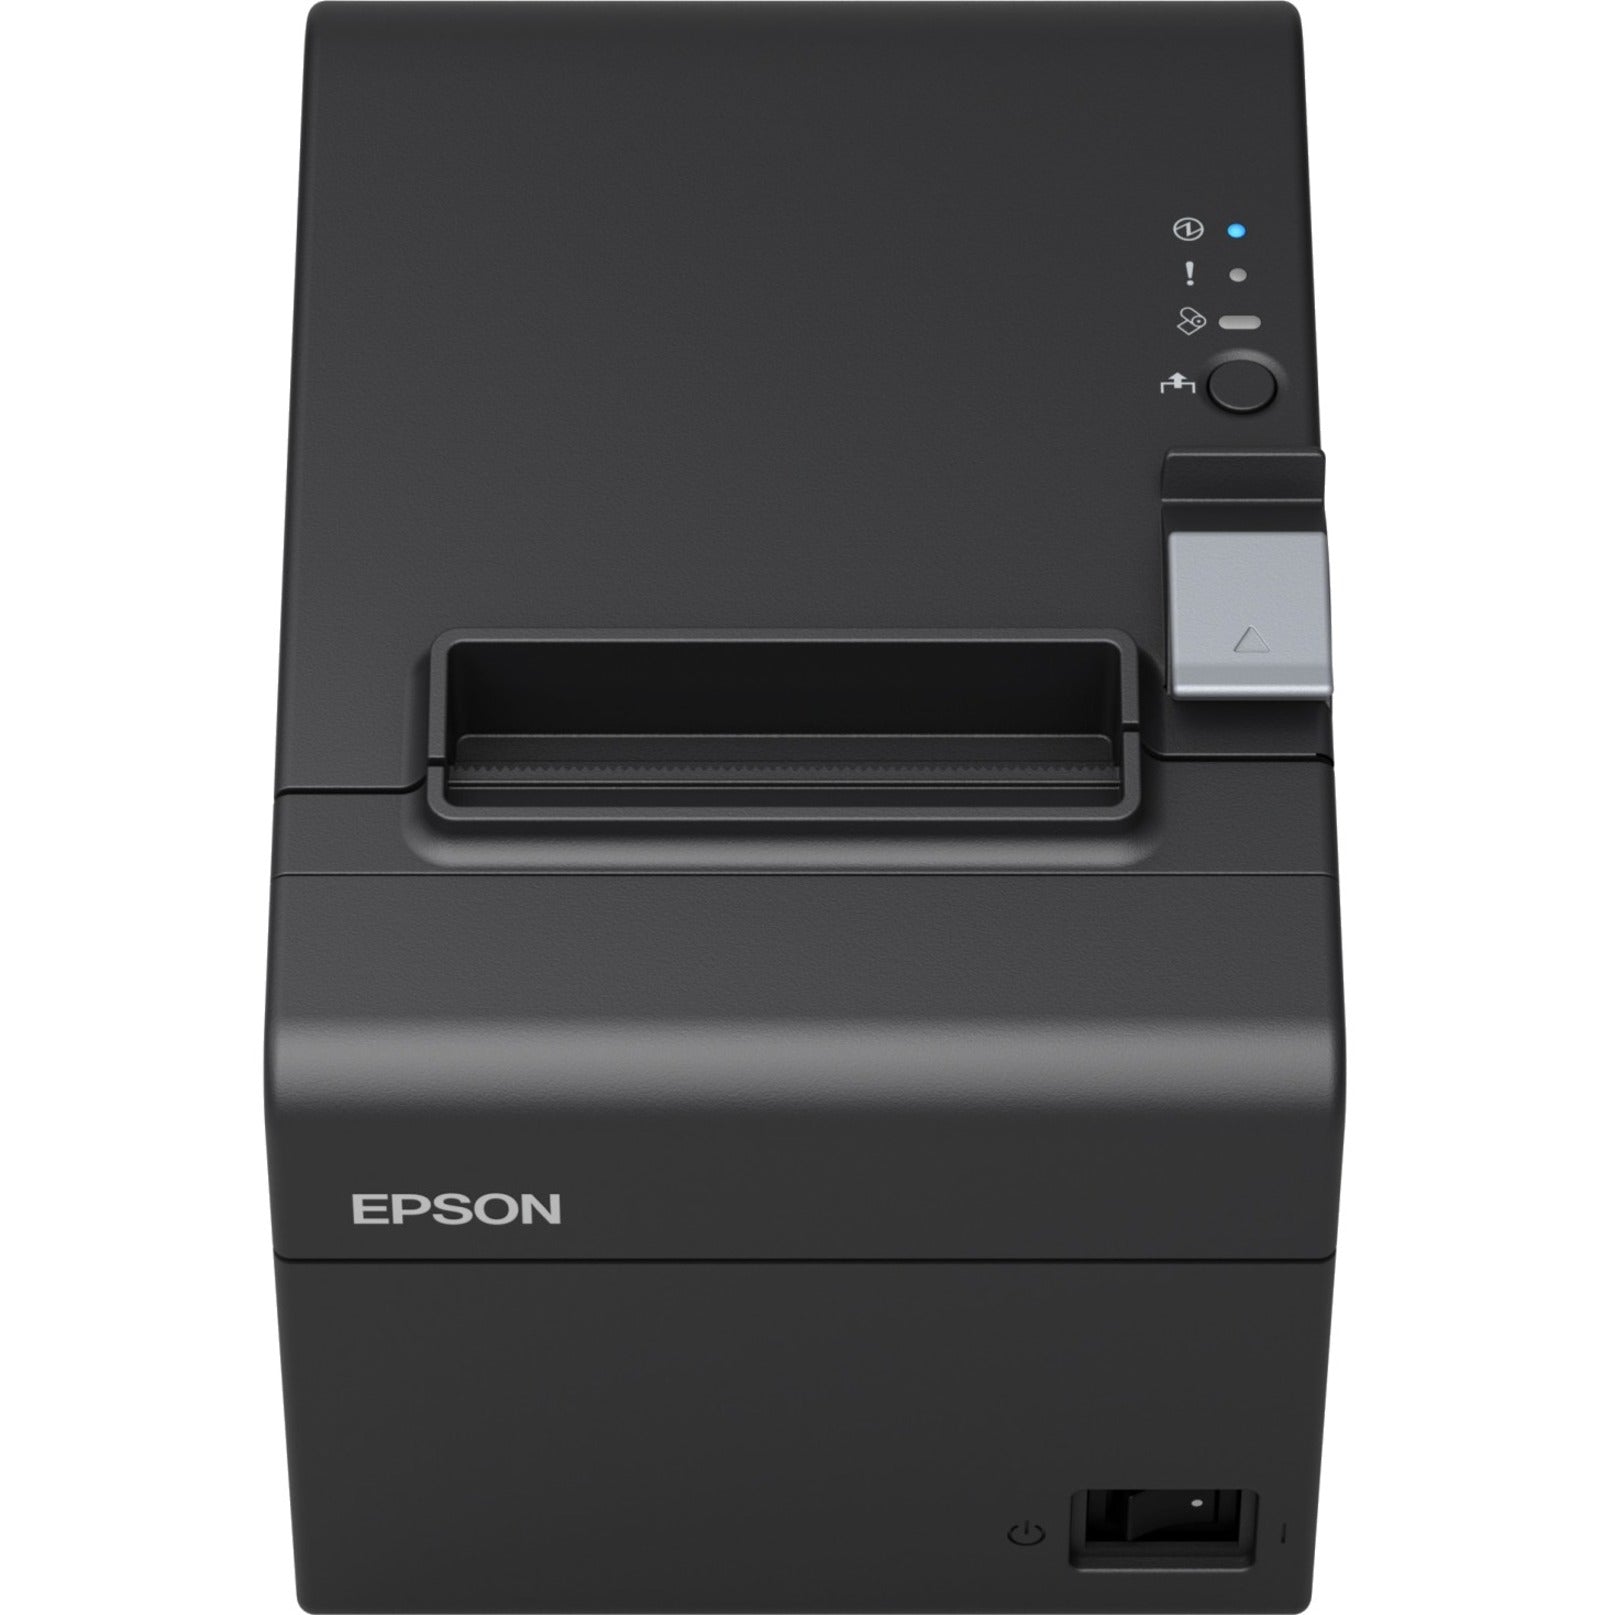 Epson C31CH51A9972 TM-T20III Thermal Receipt Printer, Ethernet, 2 Year Warranty